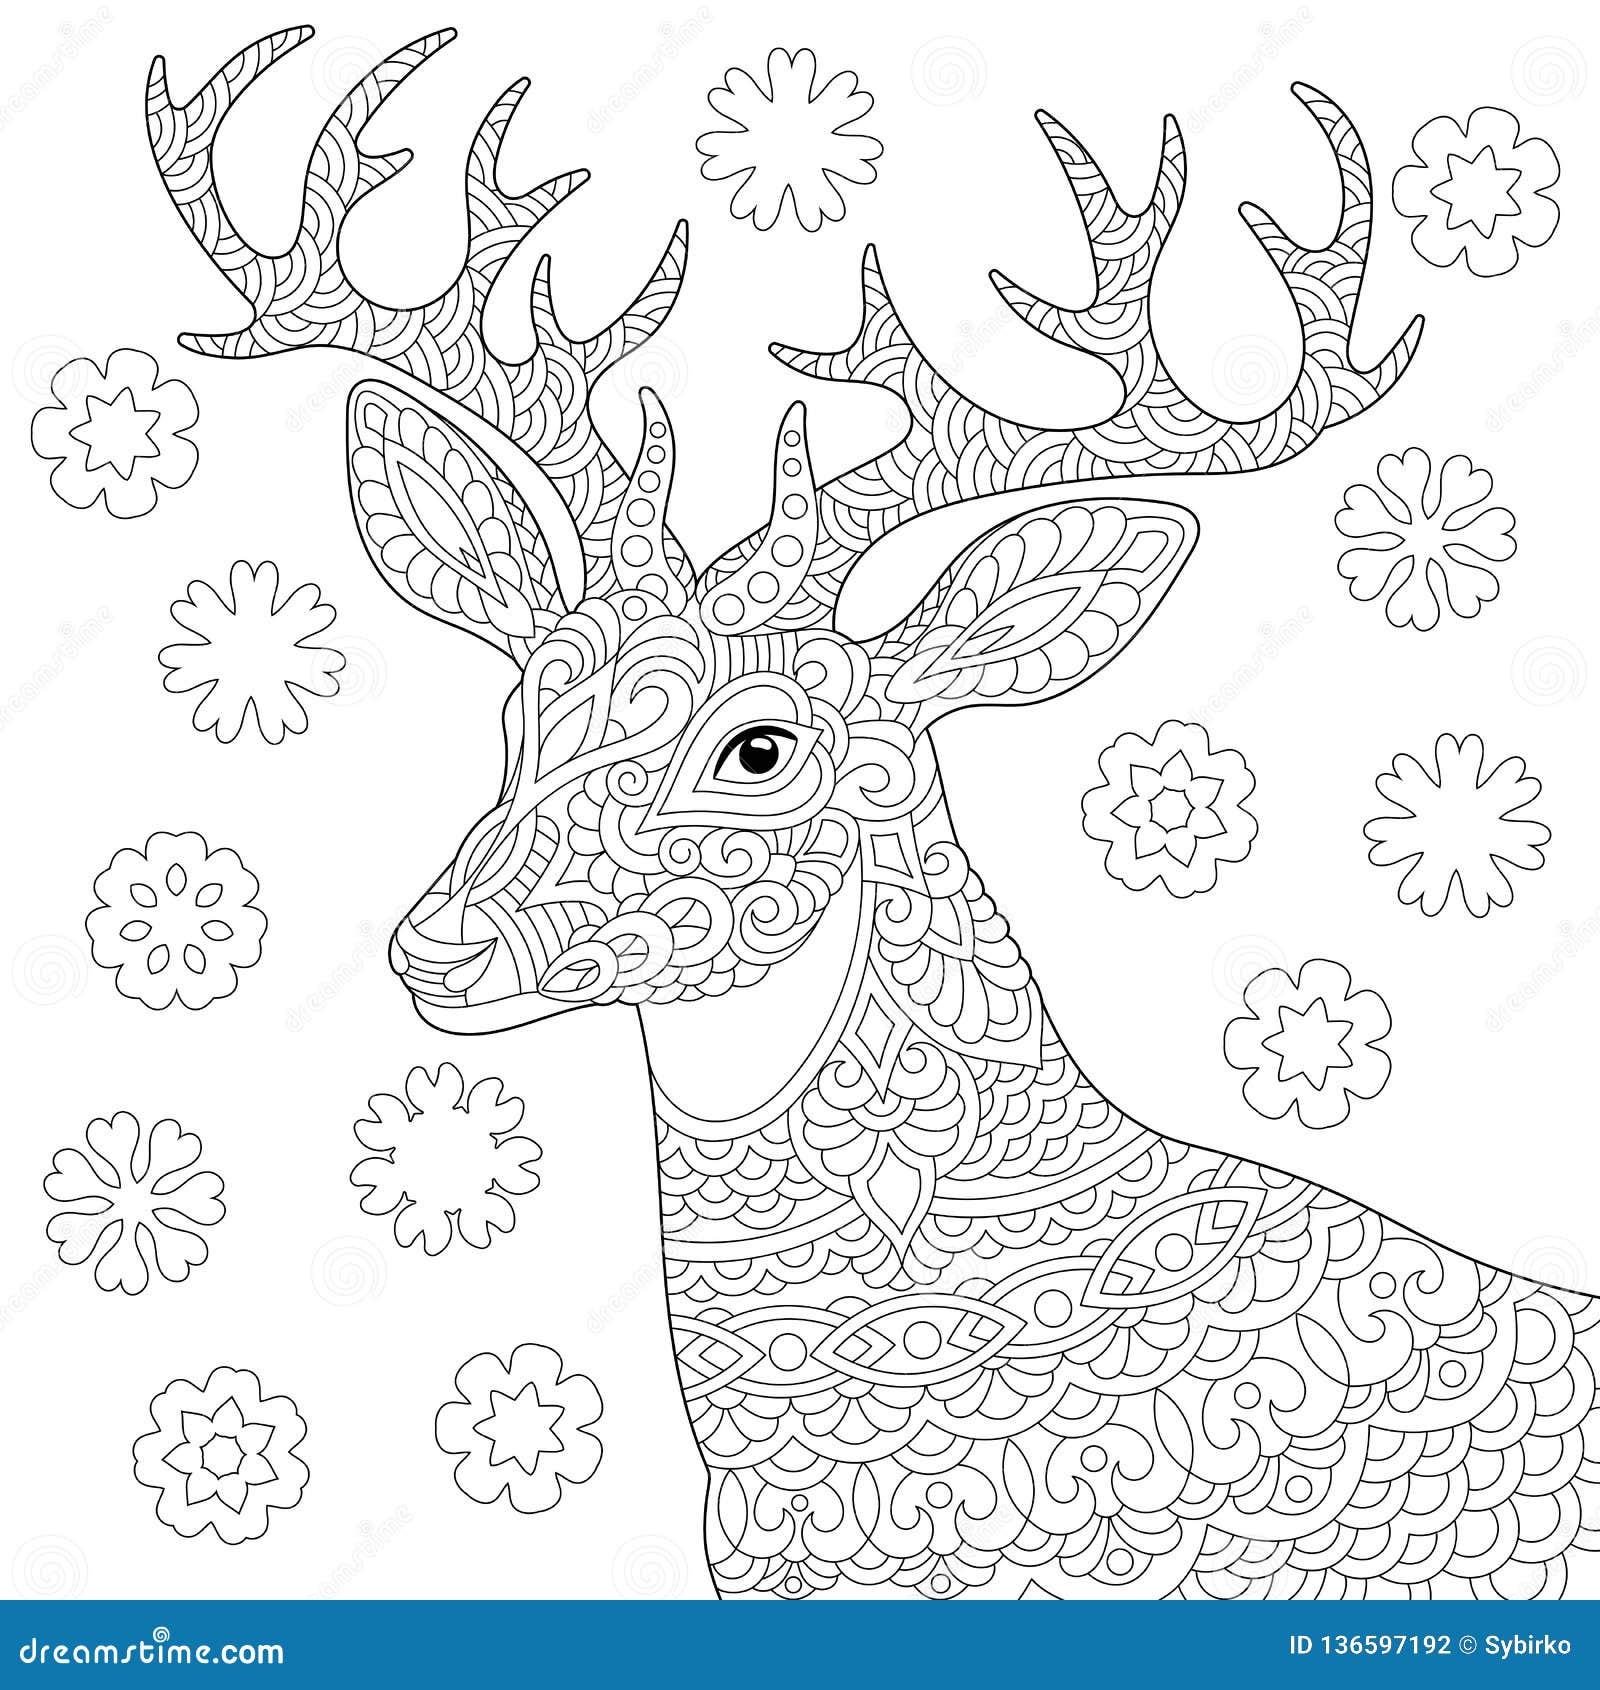 Zentangle deer reindeer coloring page stock vector